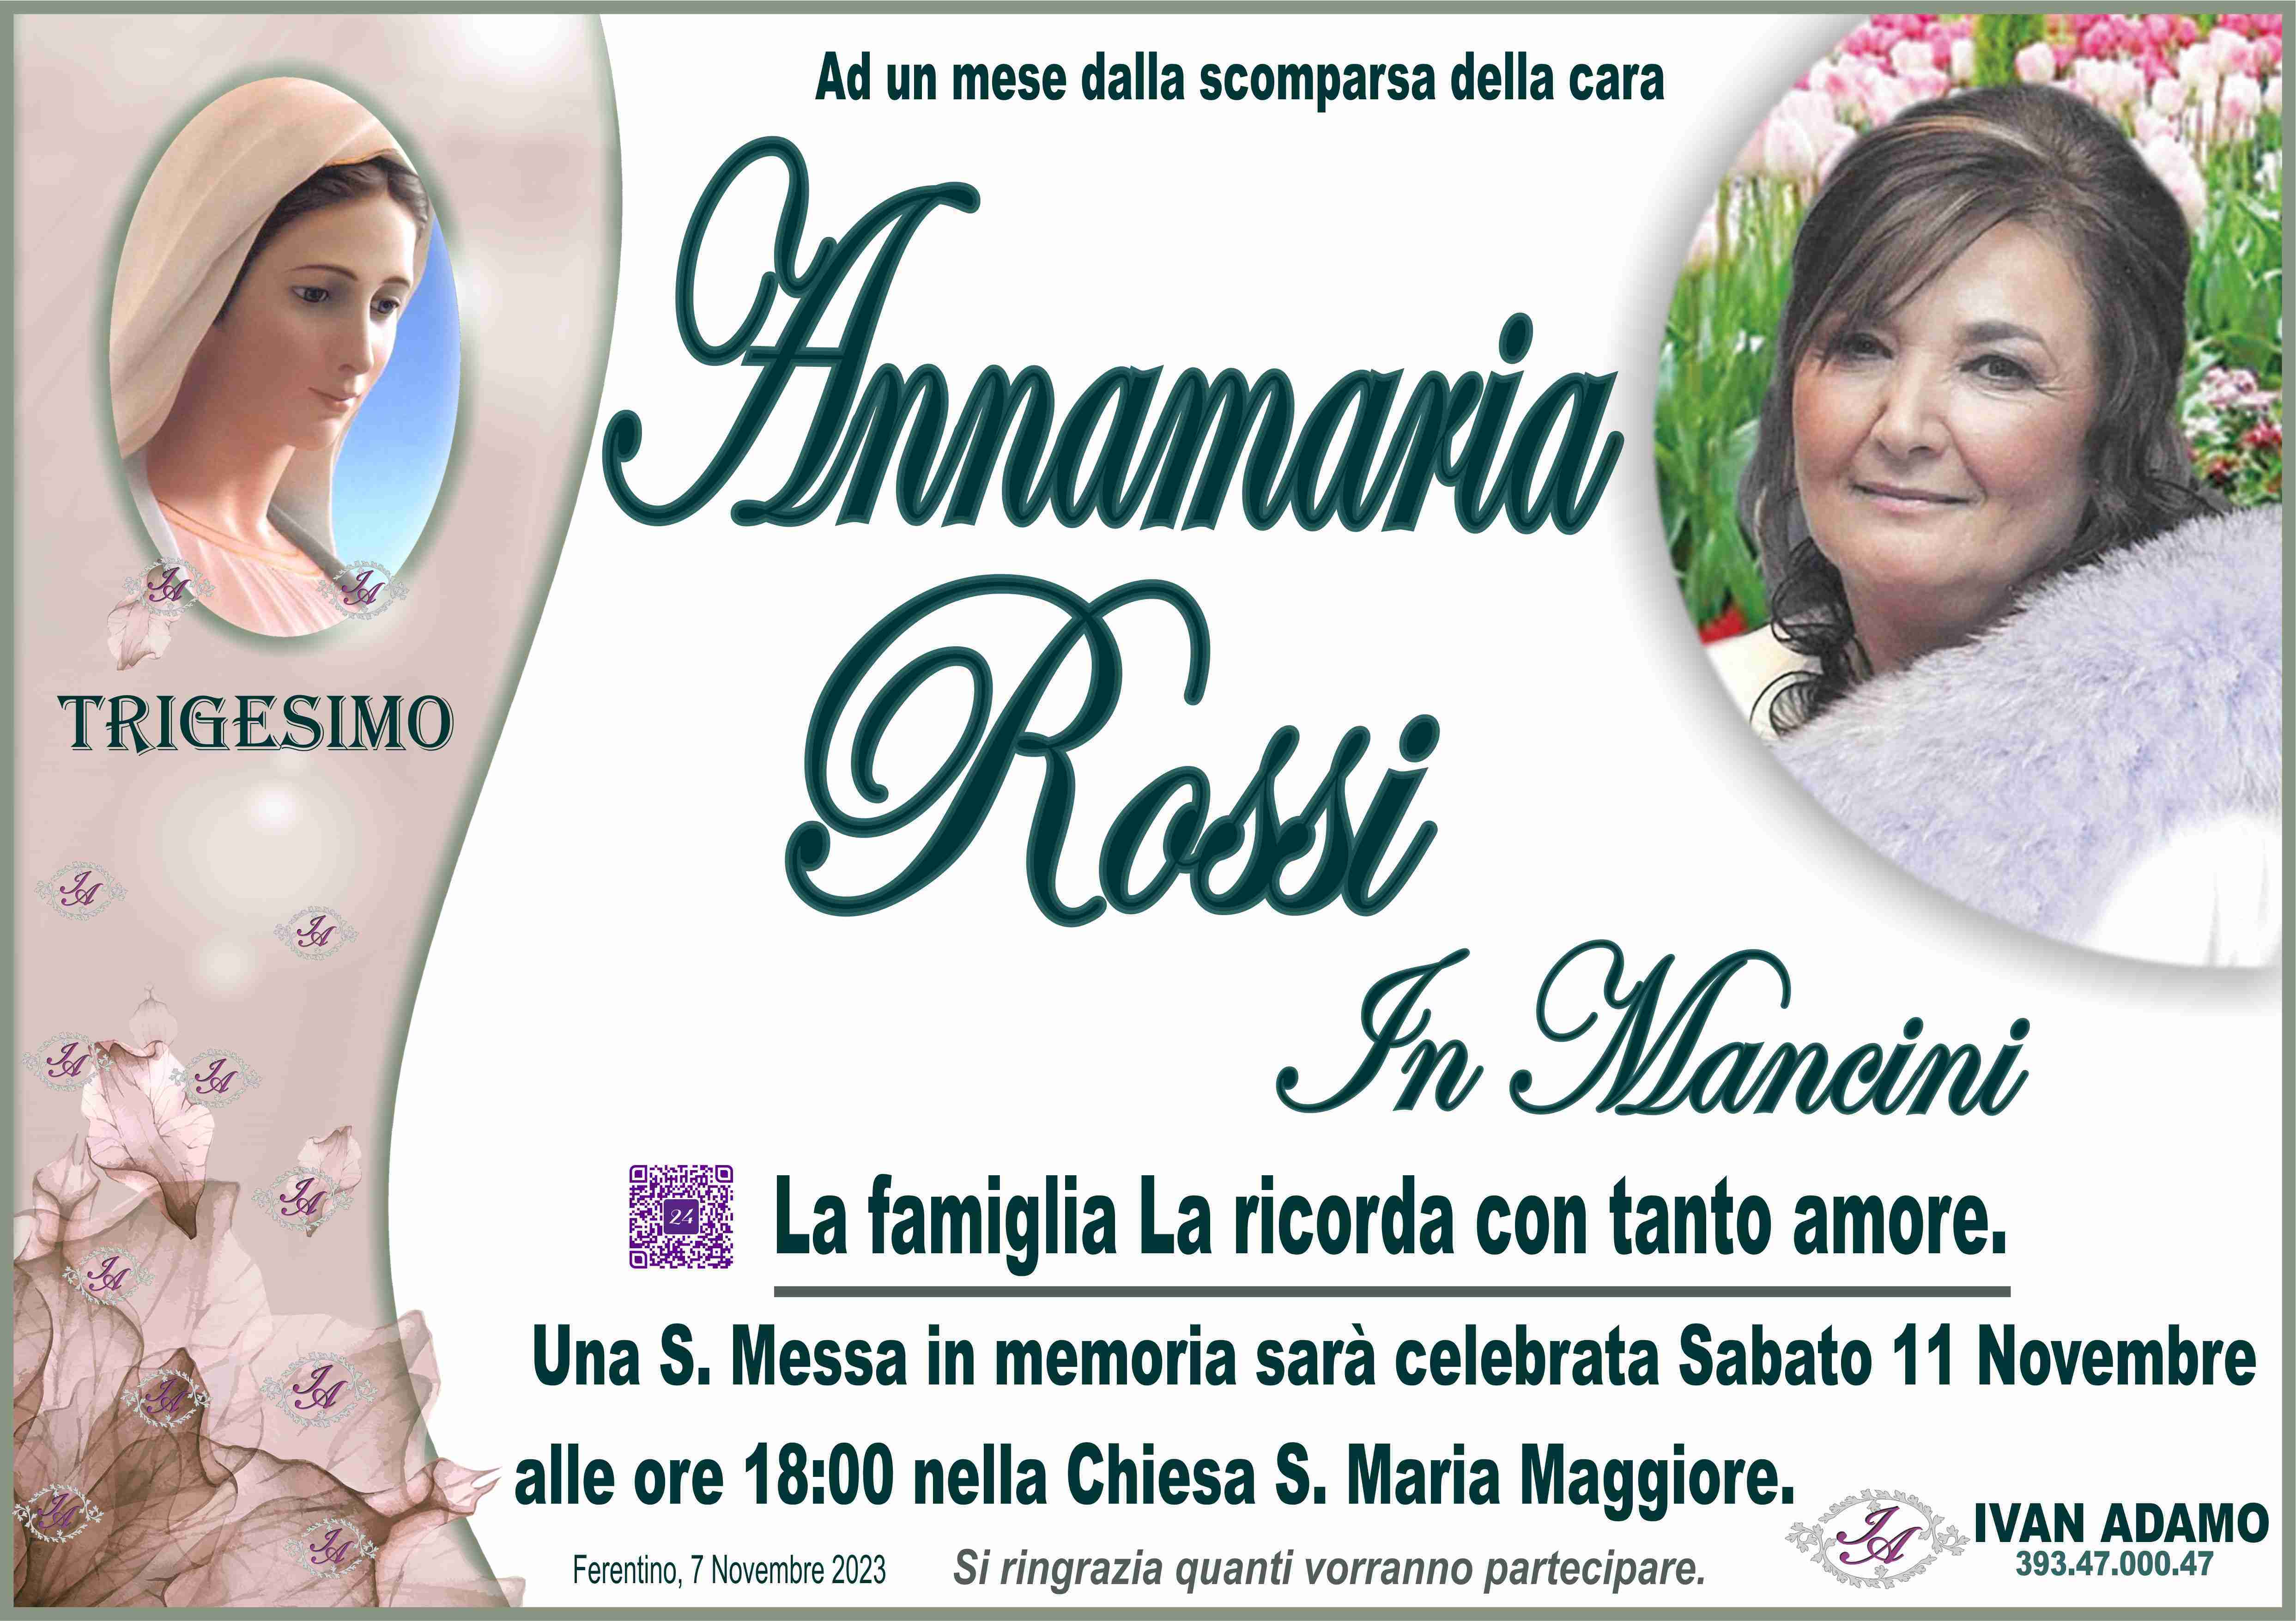 Annamaria Rossi